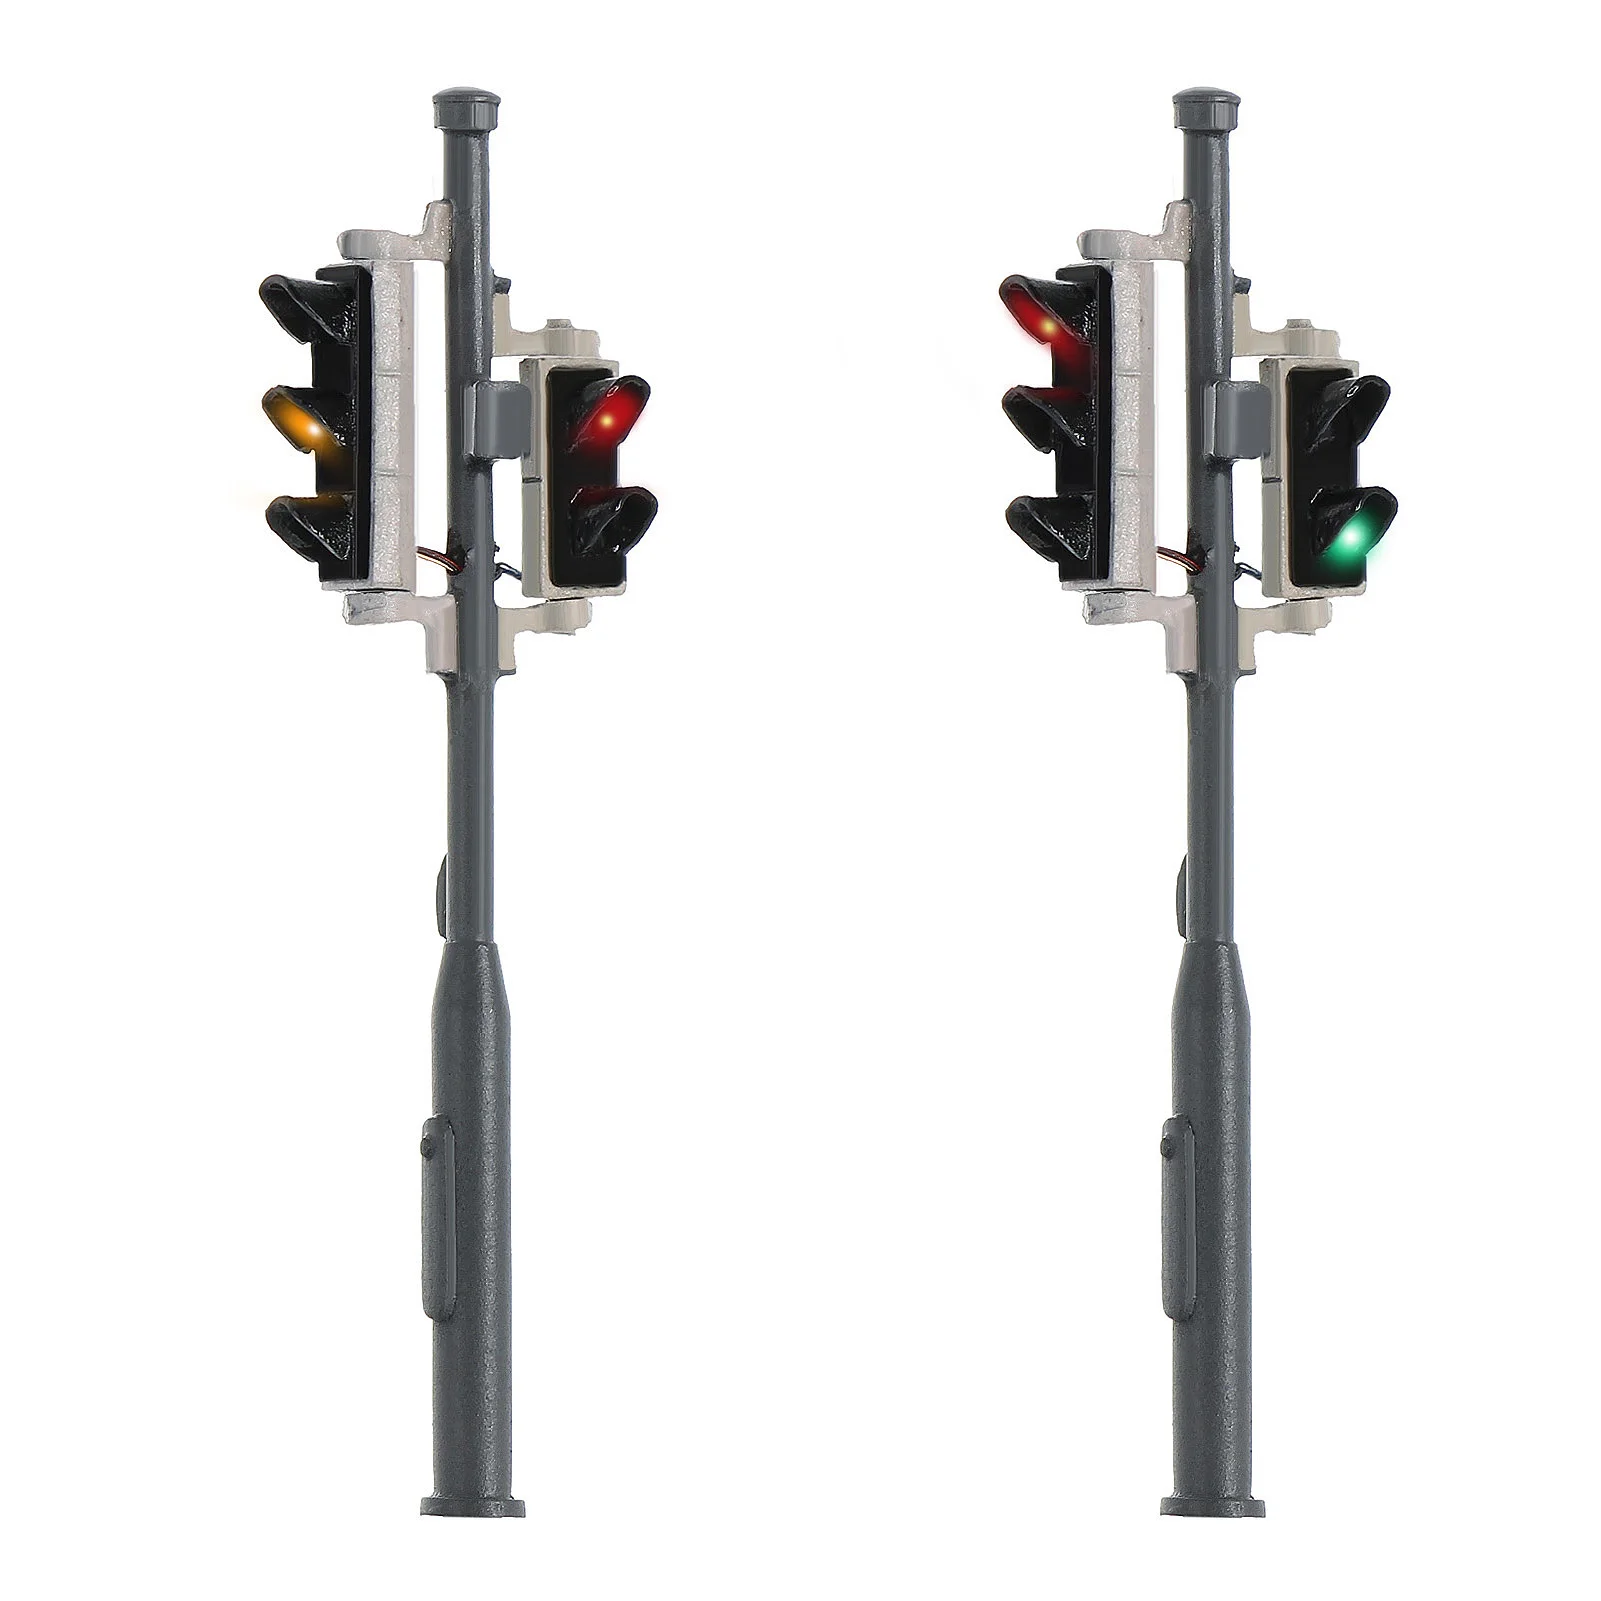 

2pcs HO Scale Model Railway Traffic Light 5-LEDs 1:87 Block Signals